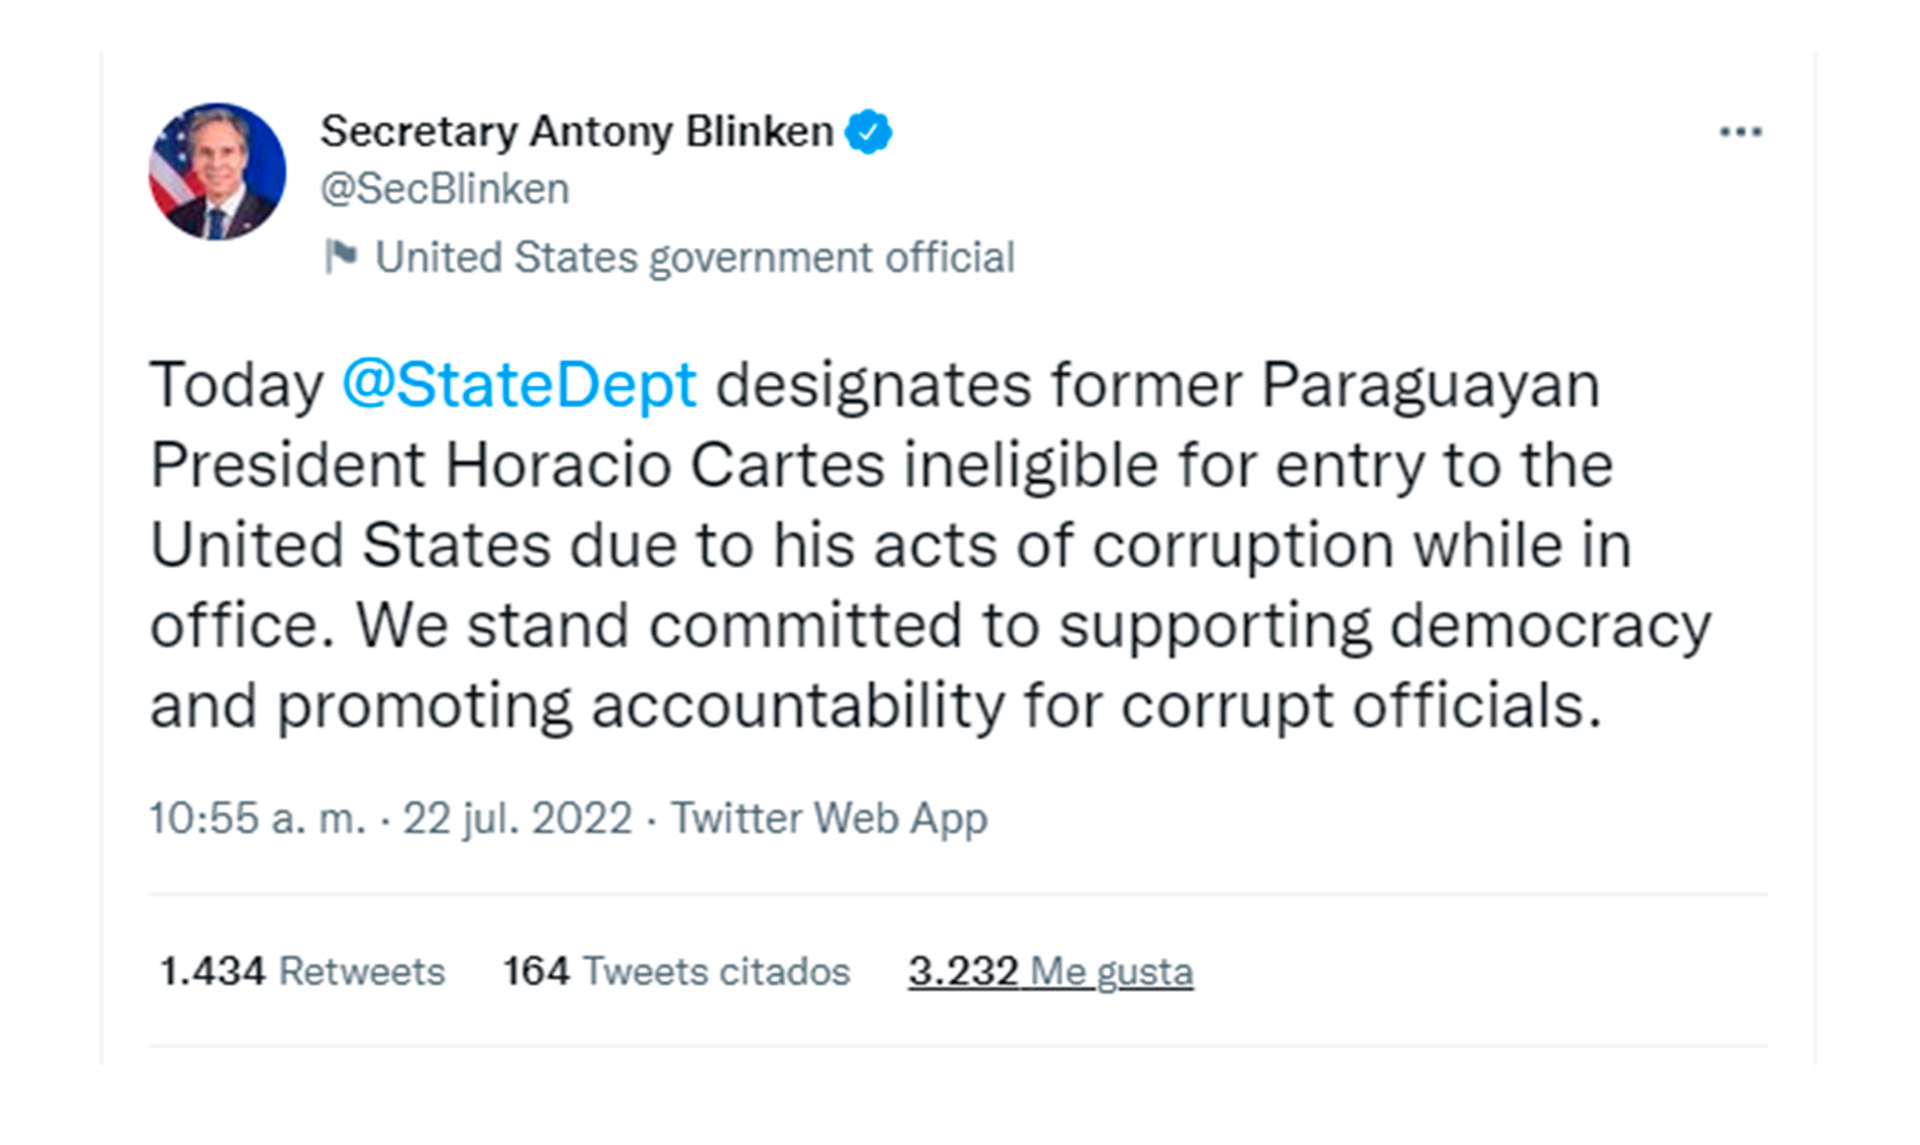 "Hoy el Departamento de Estado designa al ex presidente paraguayo Horacio Cartes como inelegible para ingresar a los Estados Unidos debido a sus actos de corrupción mientras estuvo en el cargo. Nos comprometemos a apoyar la democracia y a promover la rendición de cuentas de los funcionarios corruptos", escribió Antony Blinken en su cuenta de Twitter.